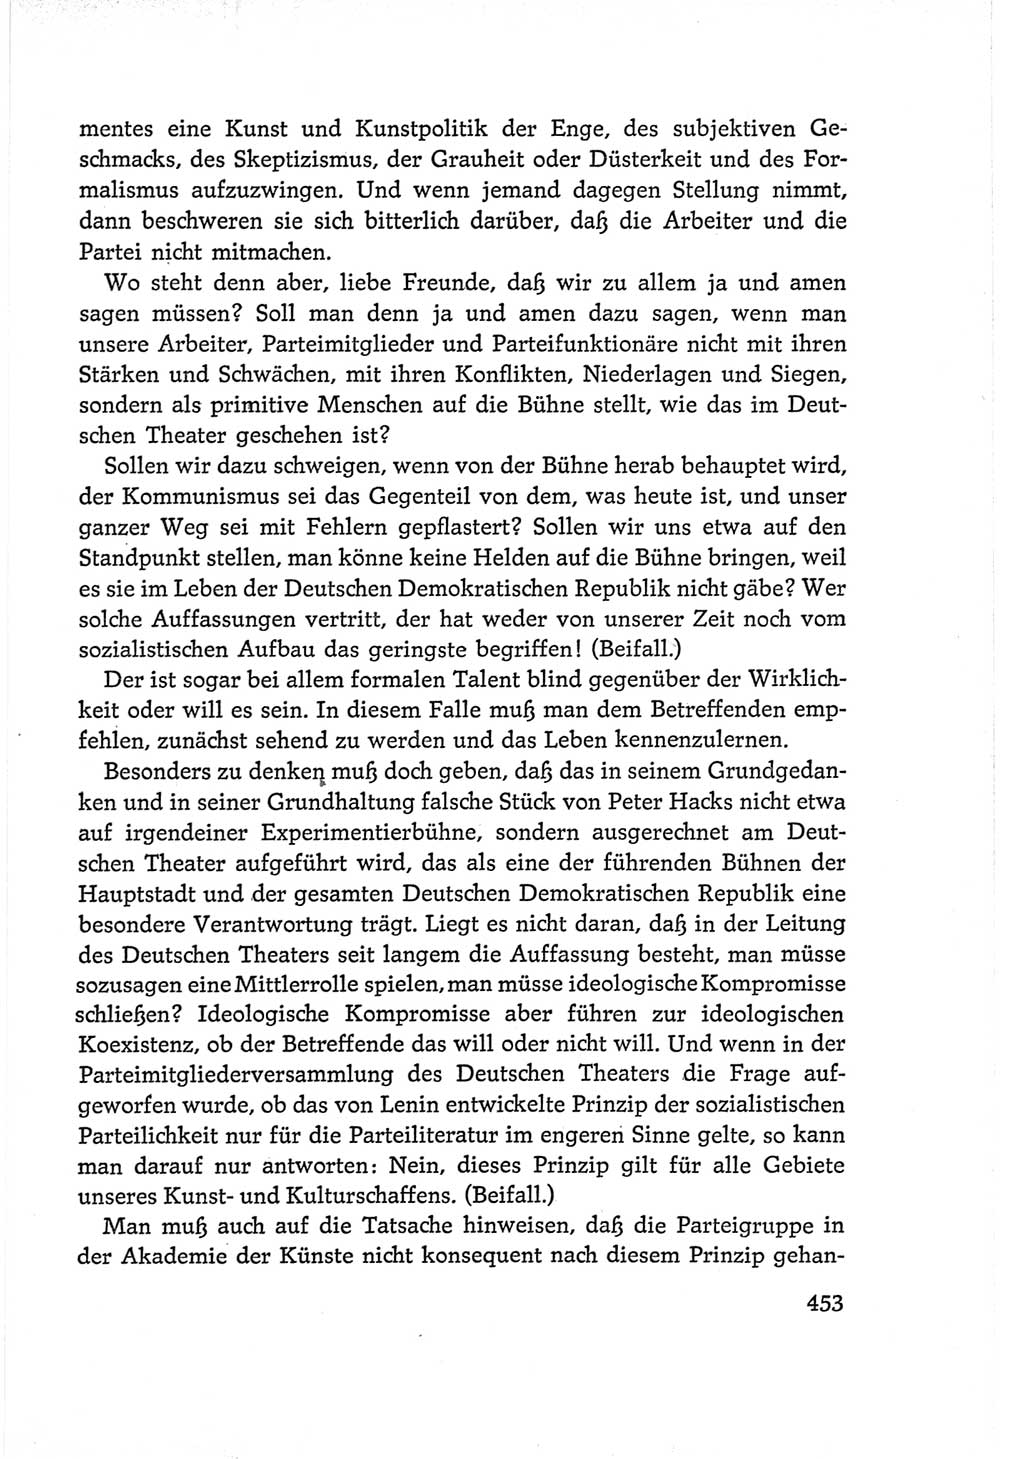 Protokoll der Verhandlungen des Ⅵ. Parteitages der Sozialistischen Einheitspartei Deutschlands (SED) [Deutsche Demokratische Republik (DDR)] 1963, Band Ⅰ, Seite 453 (Prot. Verh. Ⅵ. PT SED DDR 1963, Bd. Ⅰ, S. 453)